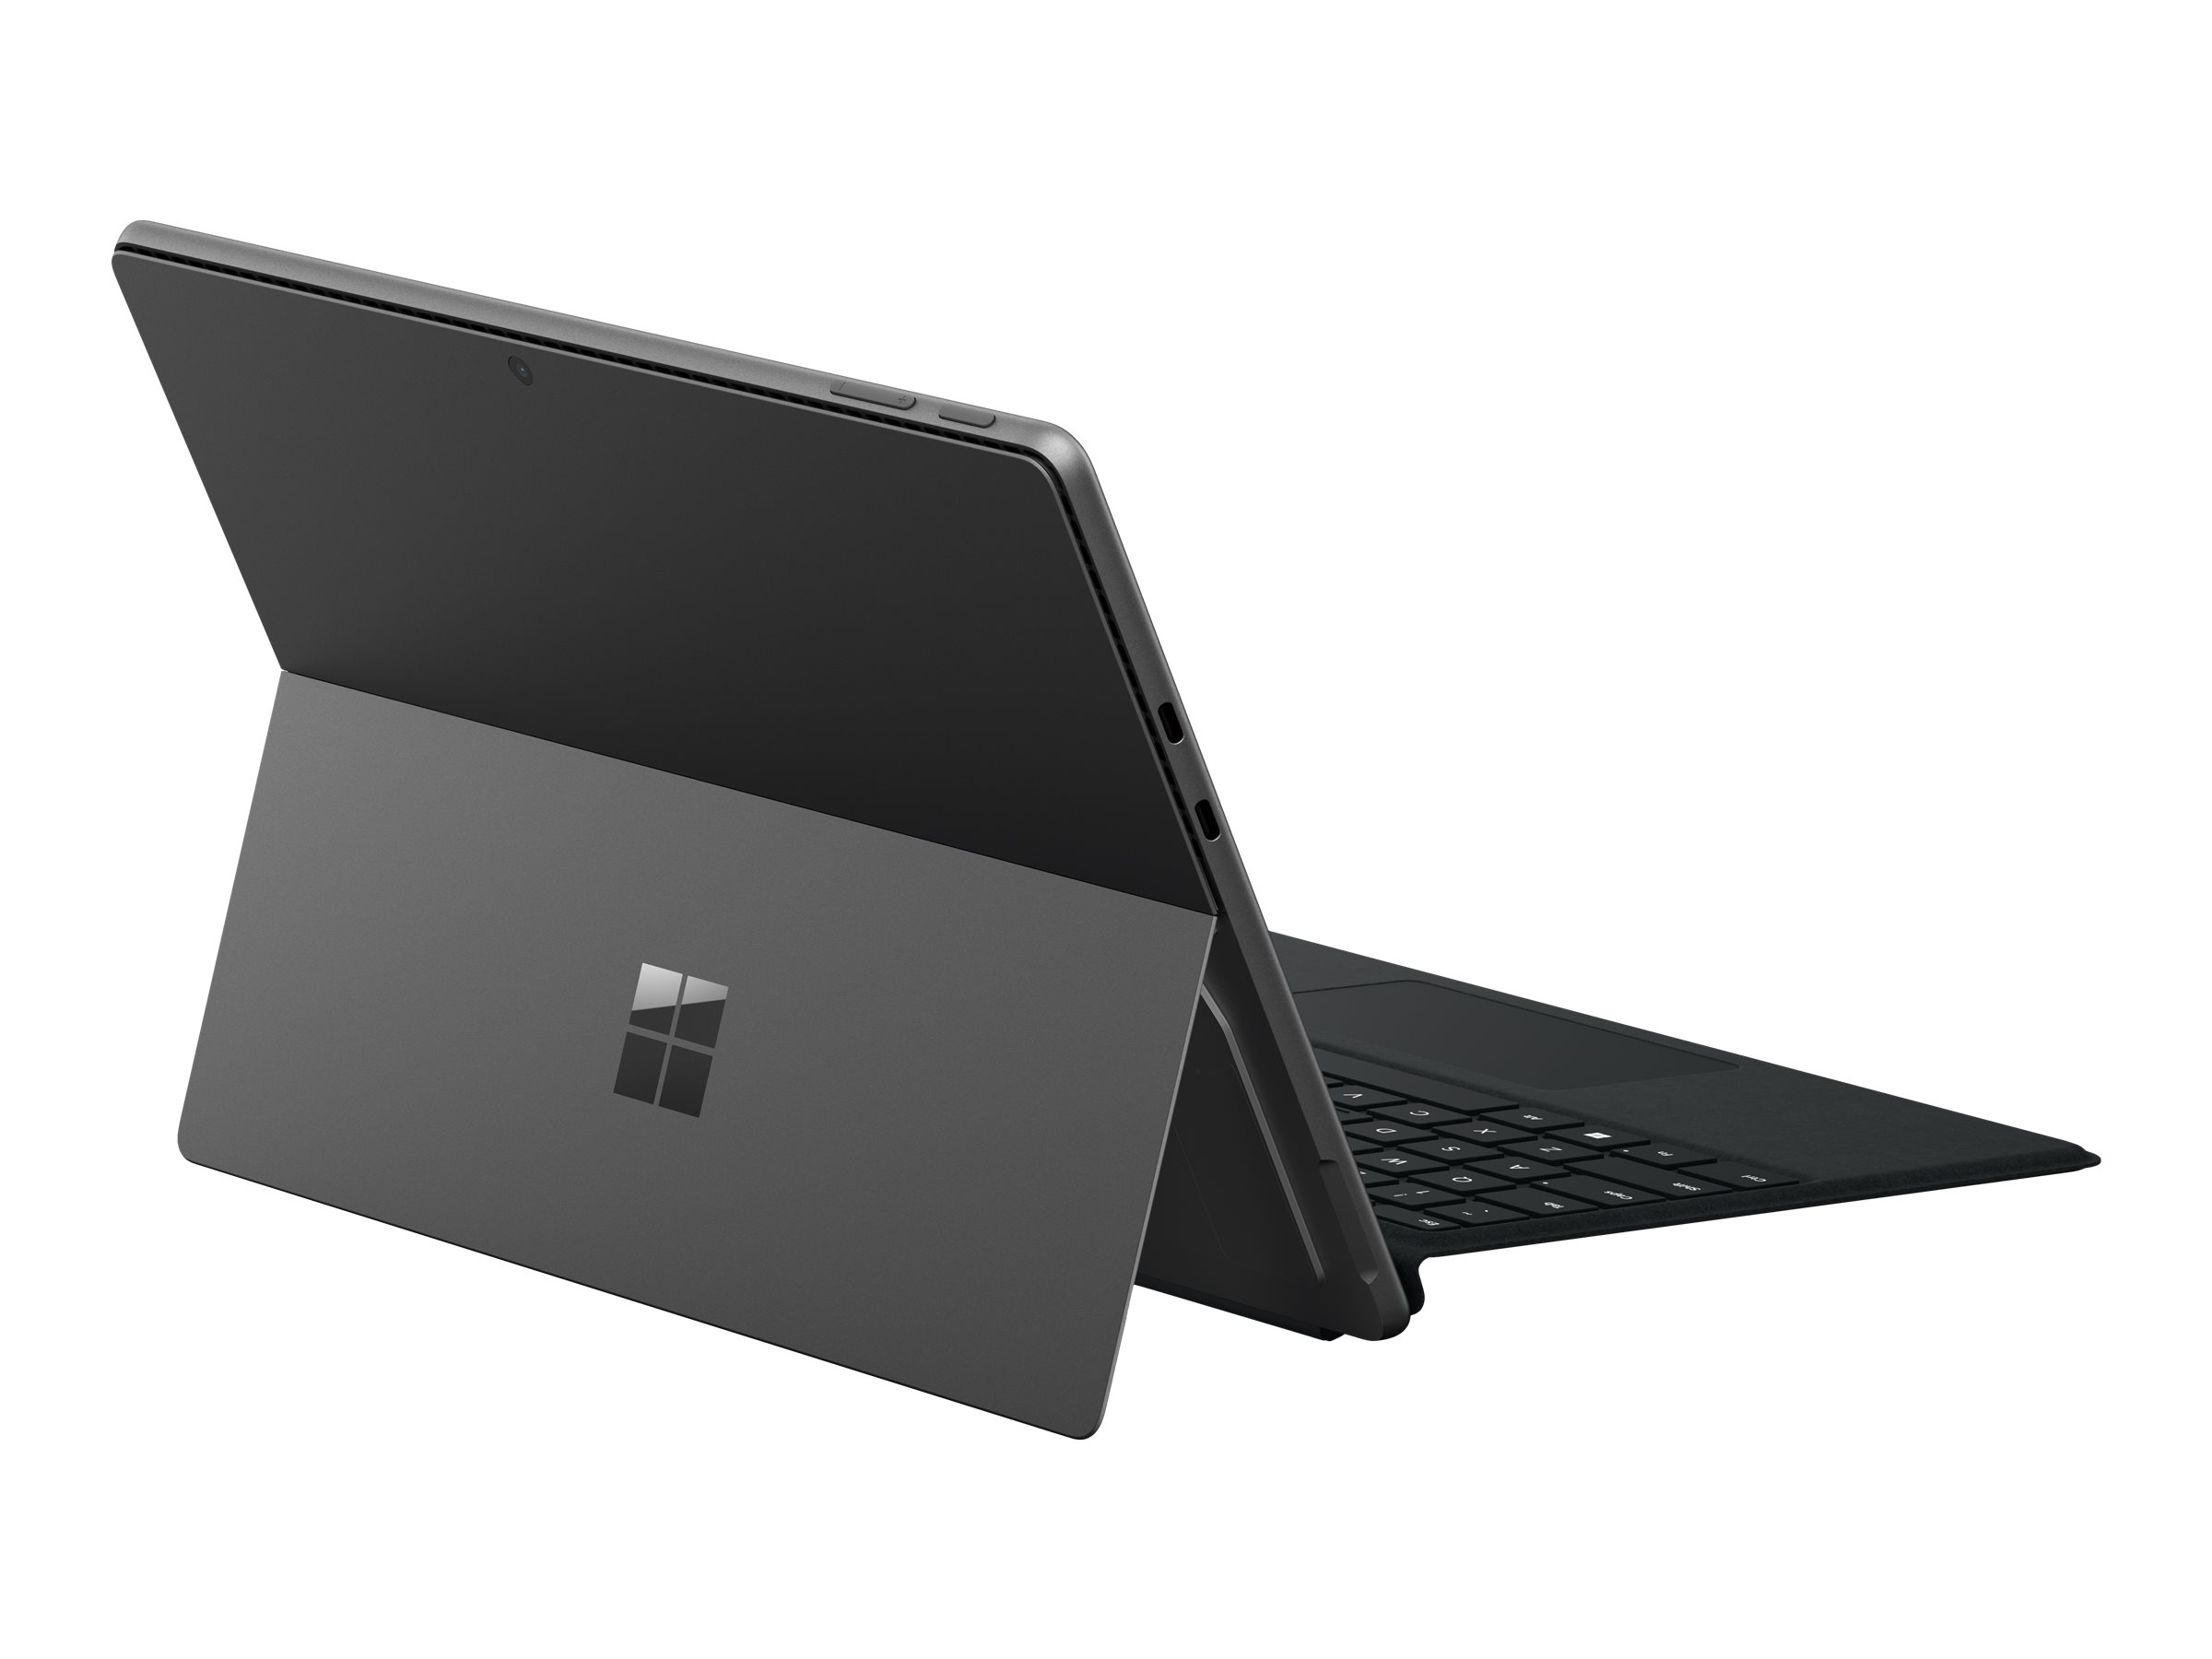 Microsoft Surface Pro 9 for Business - Tablette - Intel Core i7 - 1265U / jusqu'à 4.8 GHz - Evo - Win 11 Pro - Carte graphique Intel Iris Xe - 16 Go RAM - 256 Go SSD - 13" écran tactile 2880 x 1920 @ 120 Hz - Wi-Fi 6E - graphite - QIM-00020 - Ordinateurs portables